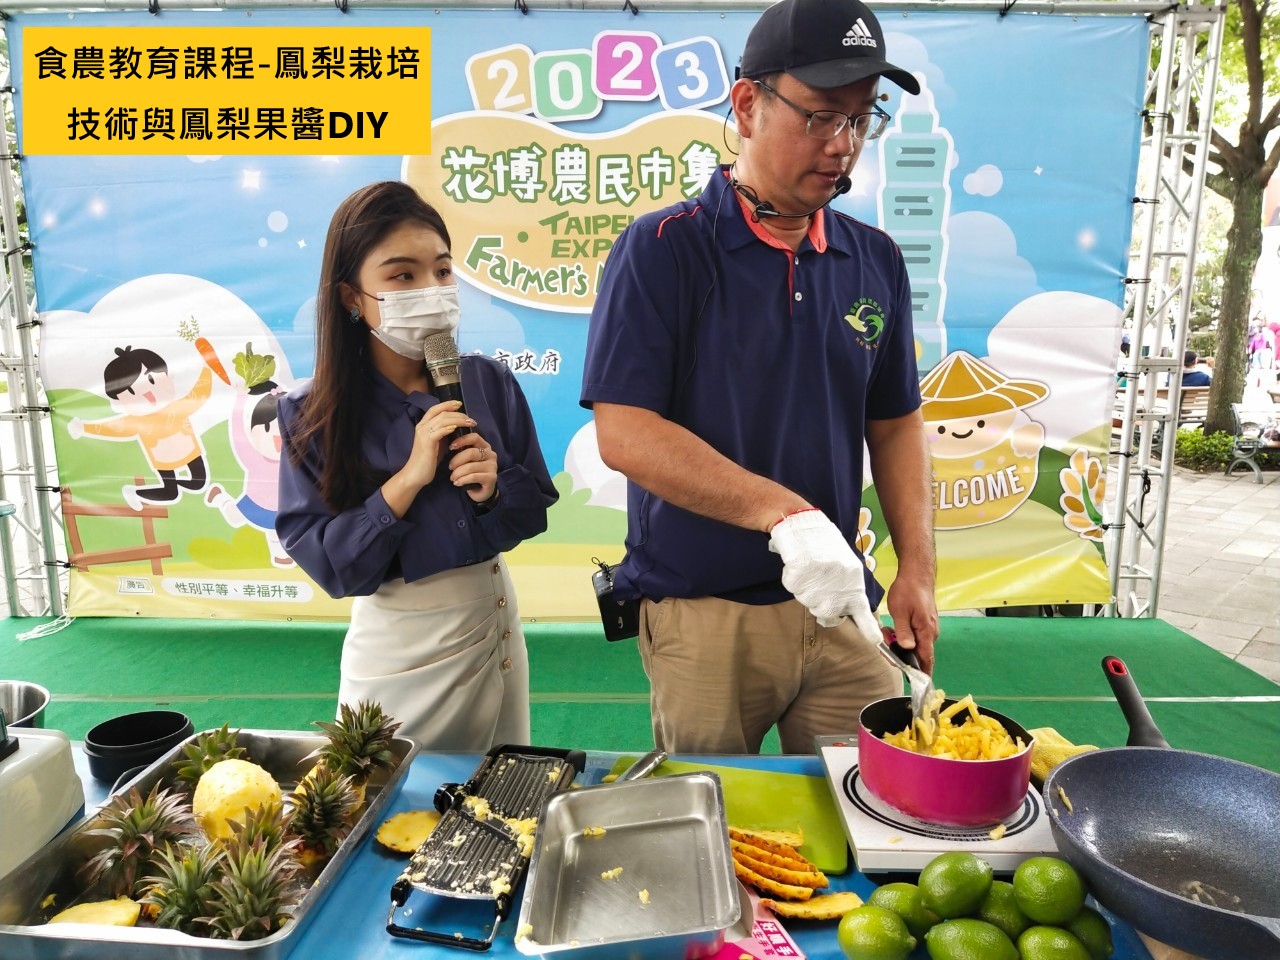 食農教育課程-鳳梨栽培技術與鳳梨果醬DIY